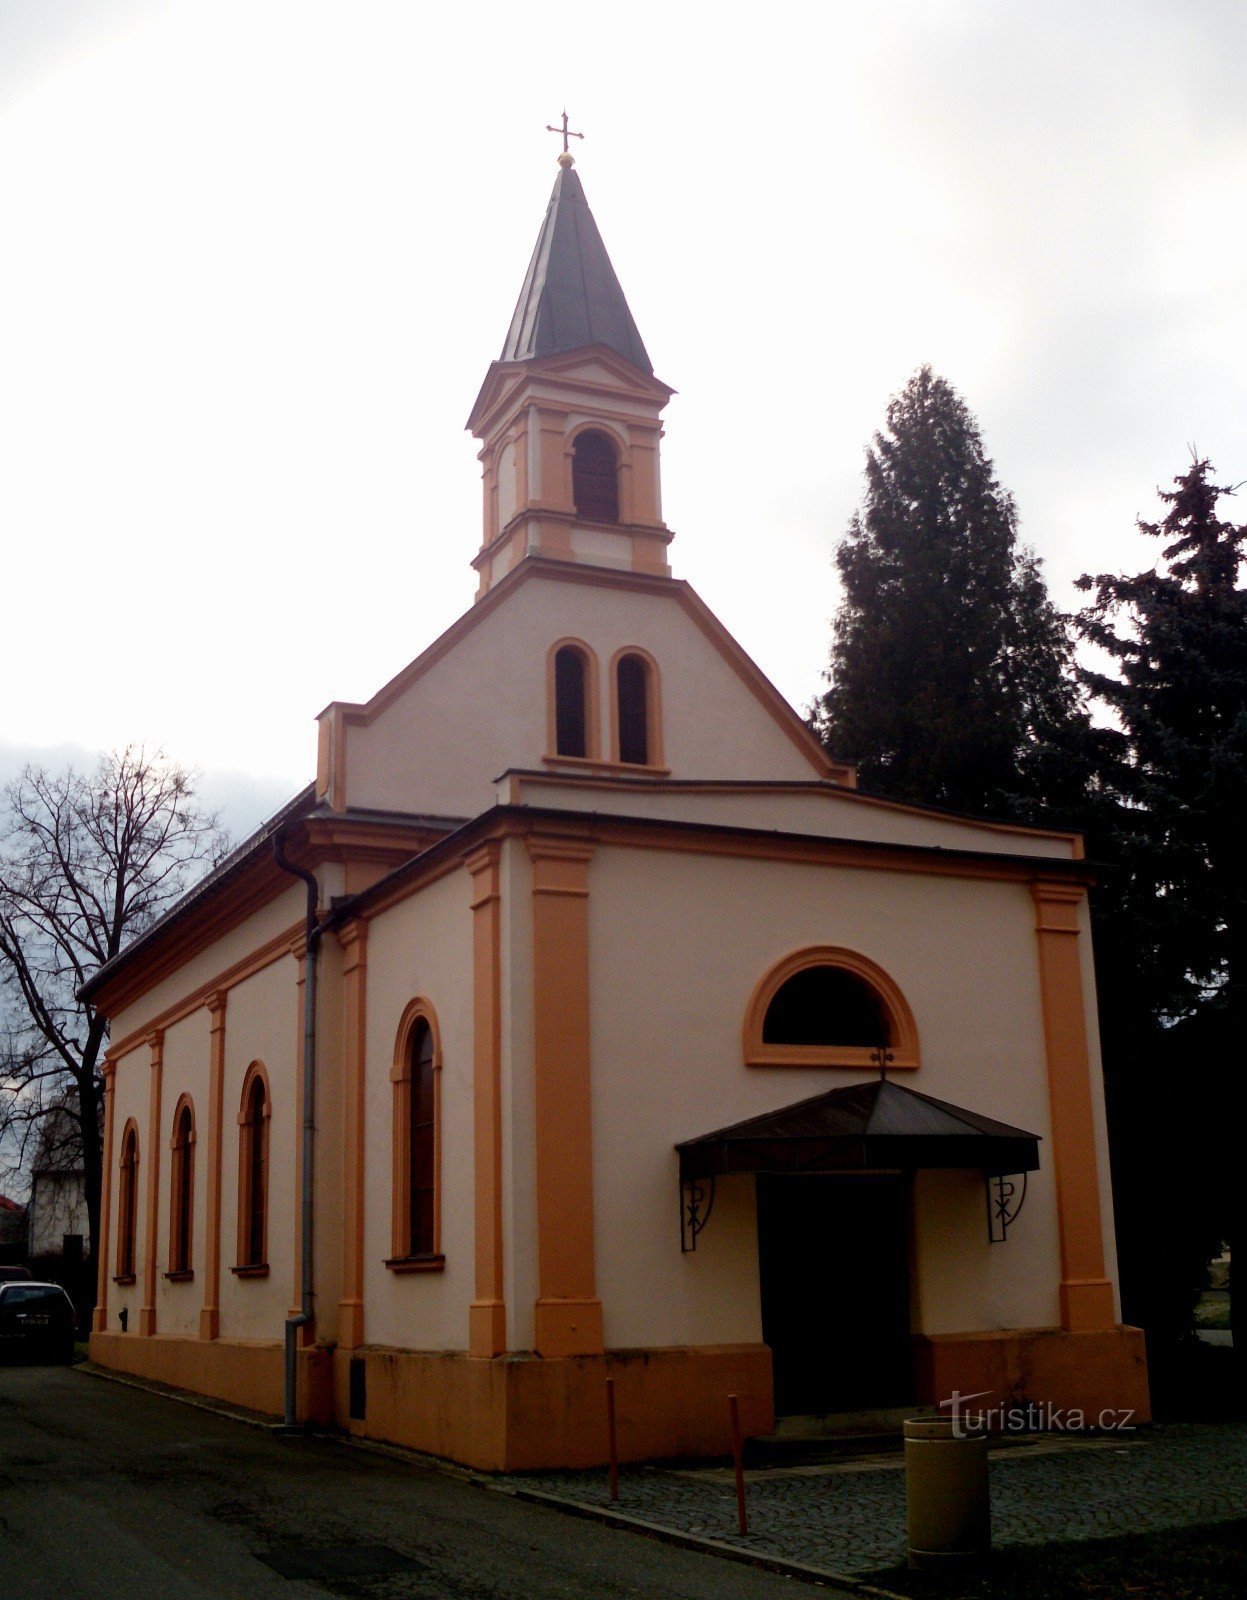 オトロコヴィツェ - クヴィトコヴィツェ - 聖パウロ教会アン